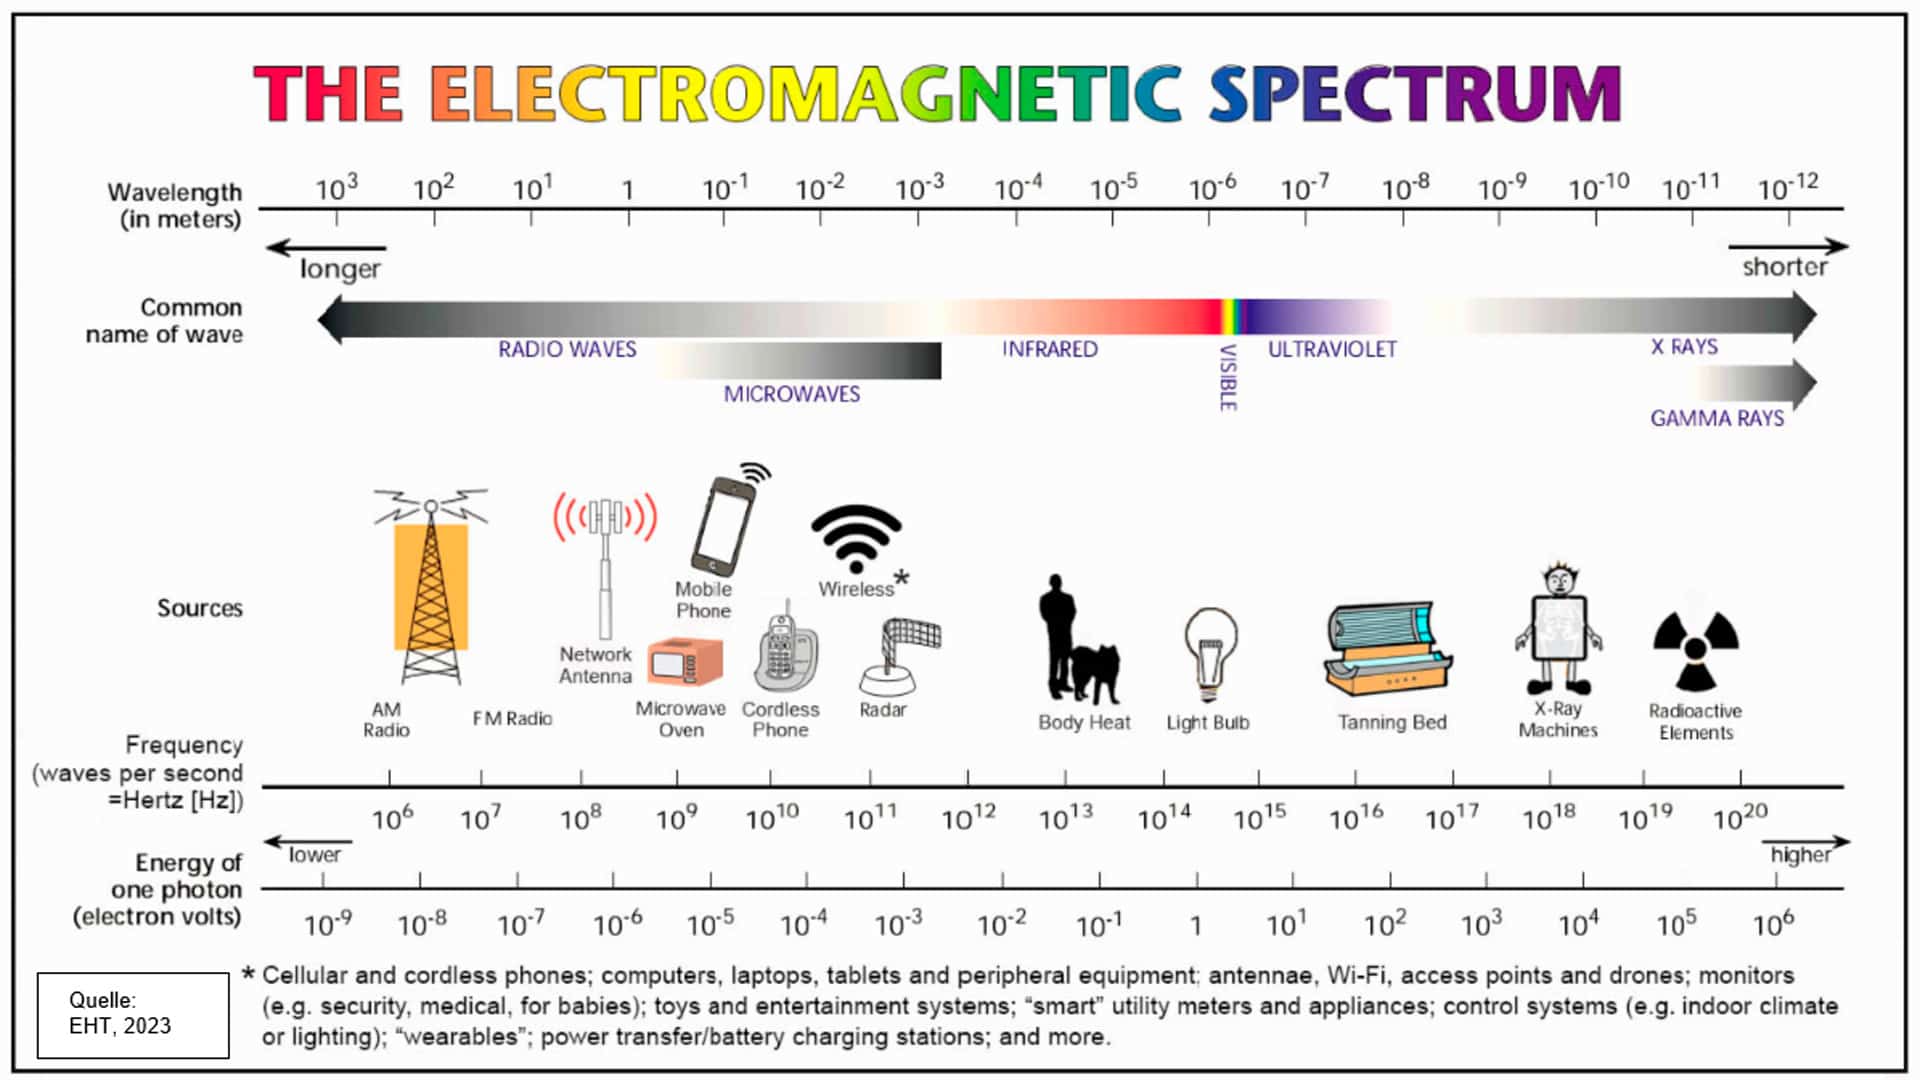 Bild zu den unterschiedlichen Arten elektromagnetischer Strahlung